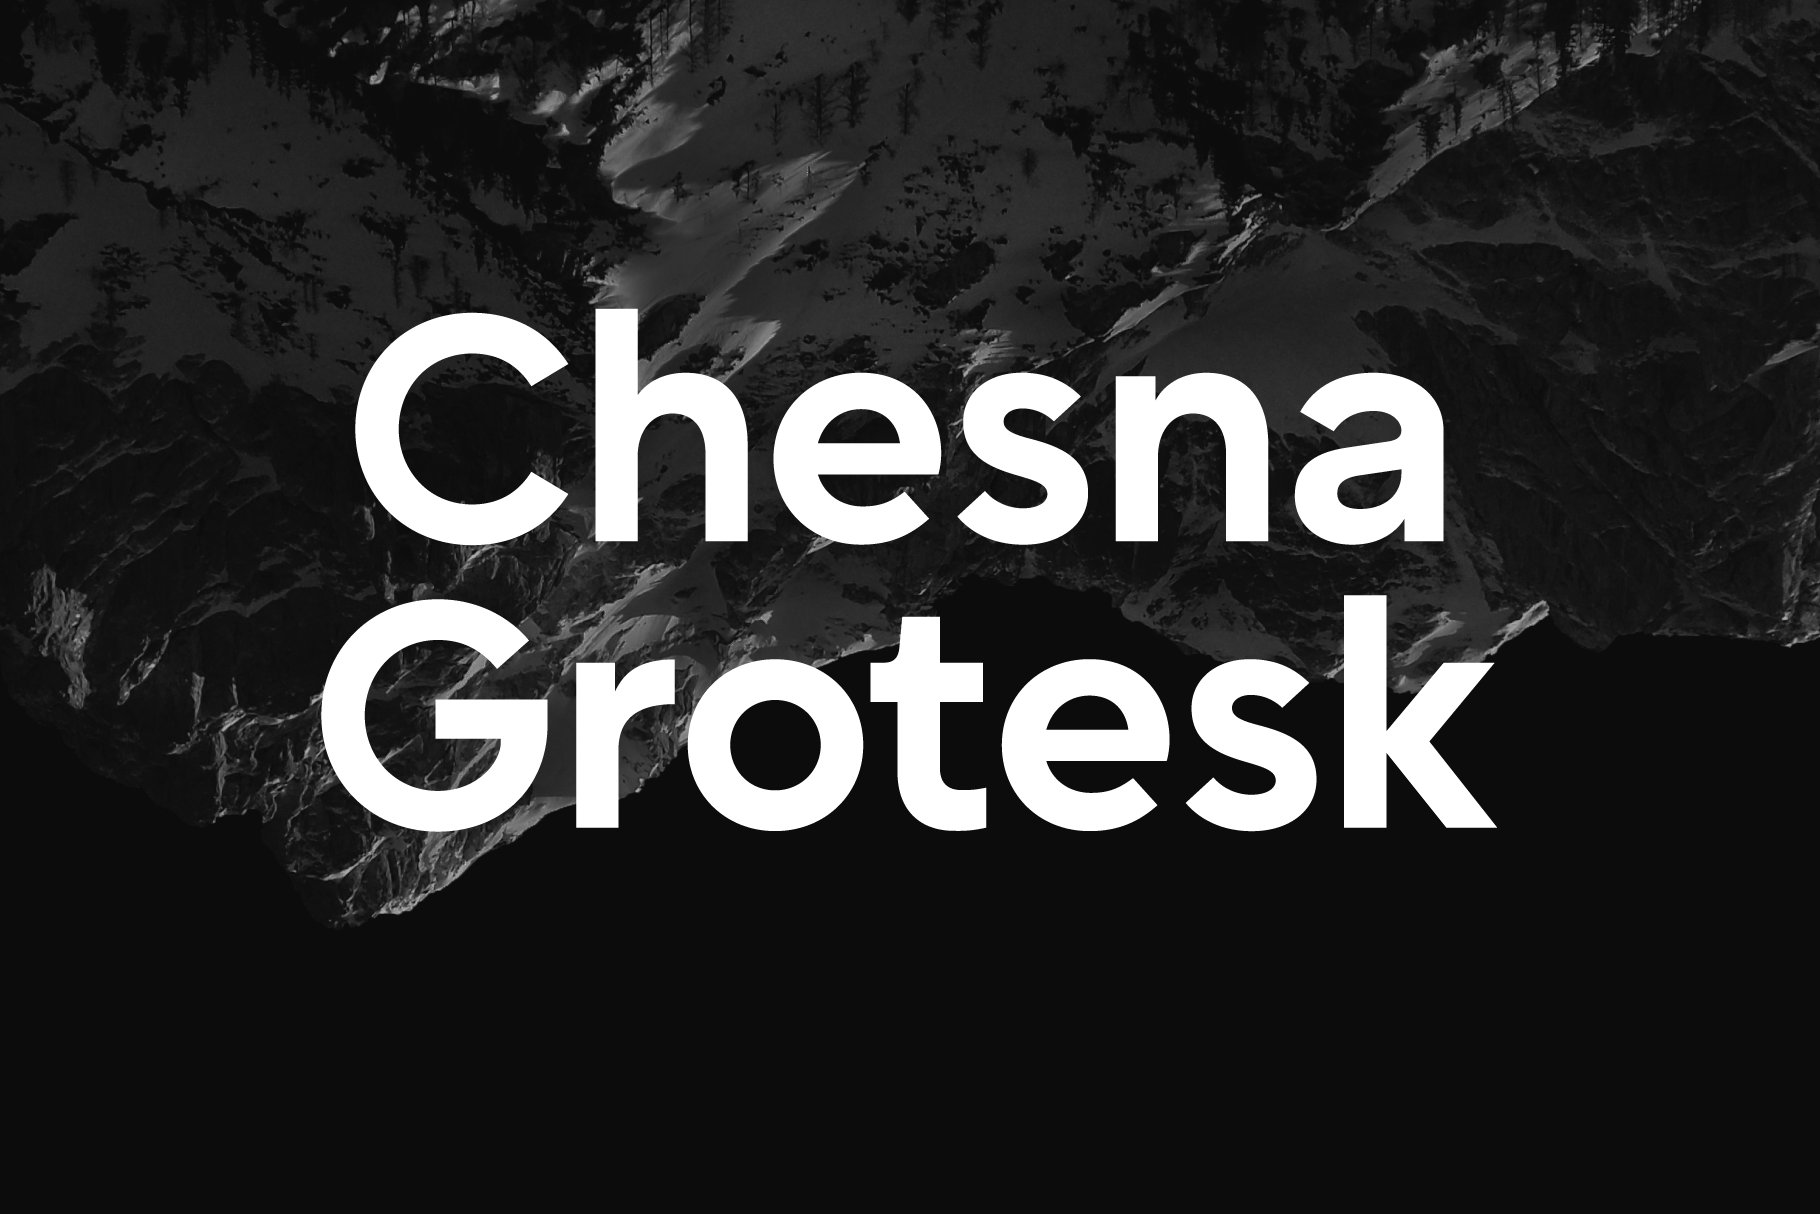 Chesna Grotesk